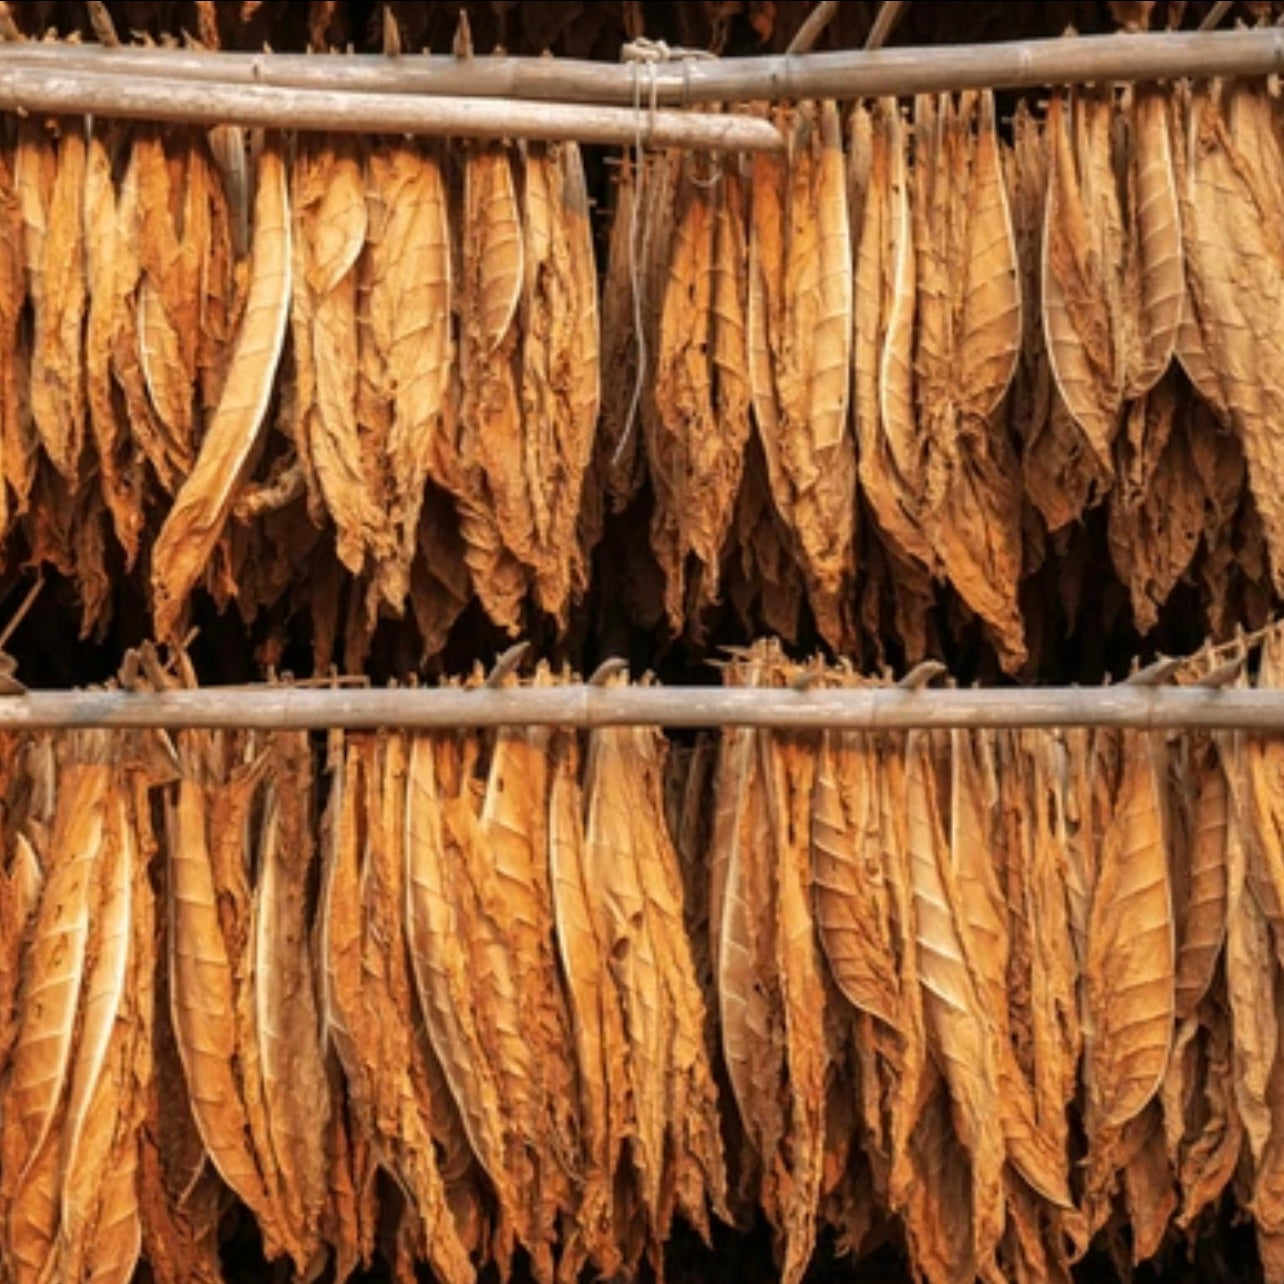 Dried Tobacco Leaf